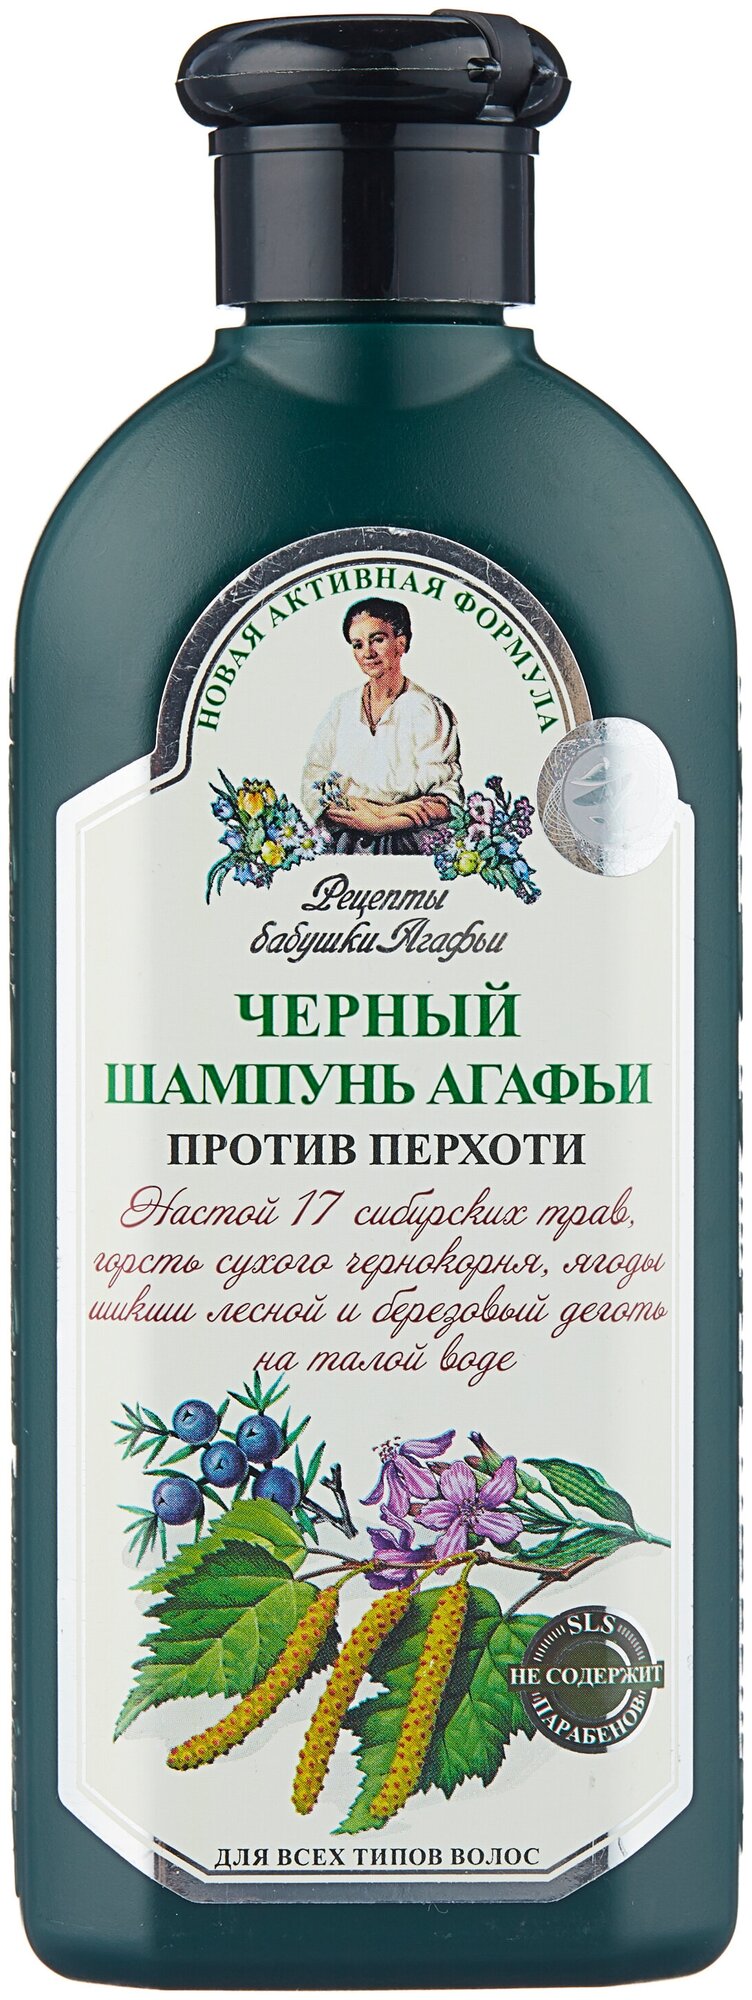 Рецепты бабушки Агафьи Шампунь Агафьи Черный для всех типов волос против перхоти 350 мл